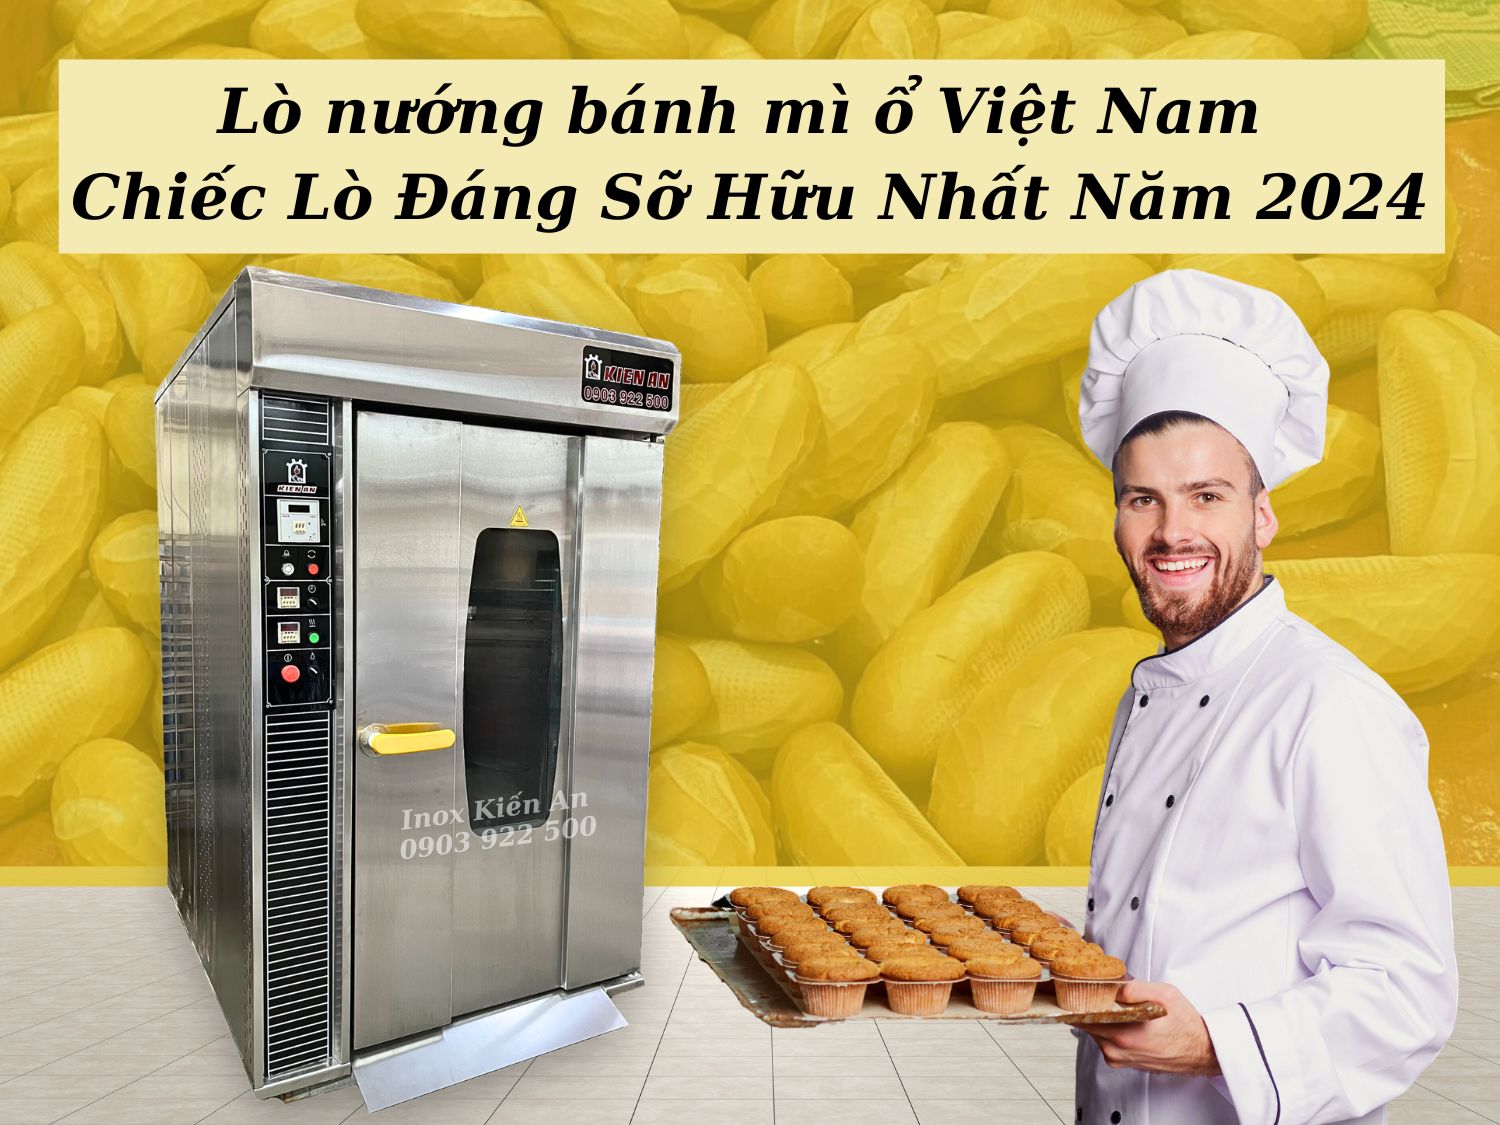 Lò nướng bánh mì ổ Việt Nam Chiếc Lò Đáng Sỡ Hữu Nhất Năm 2024